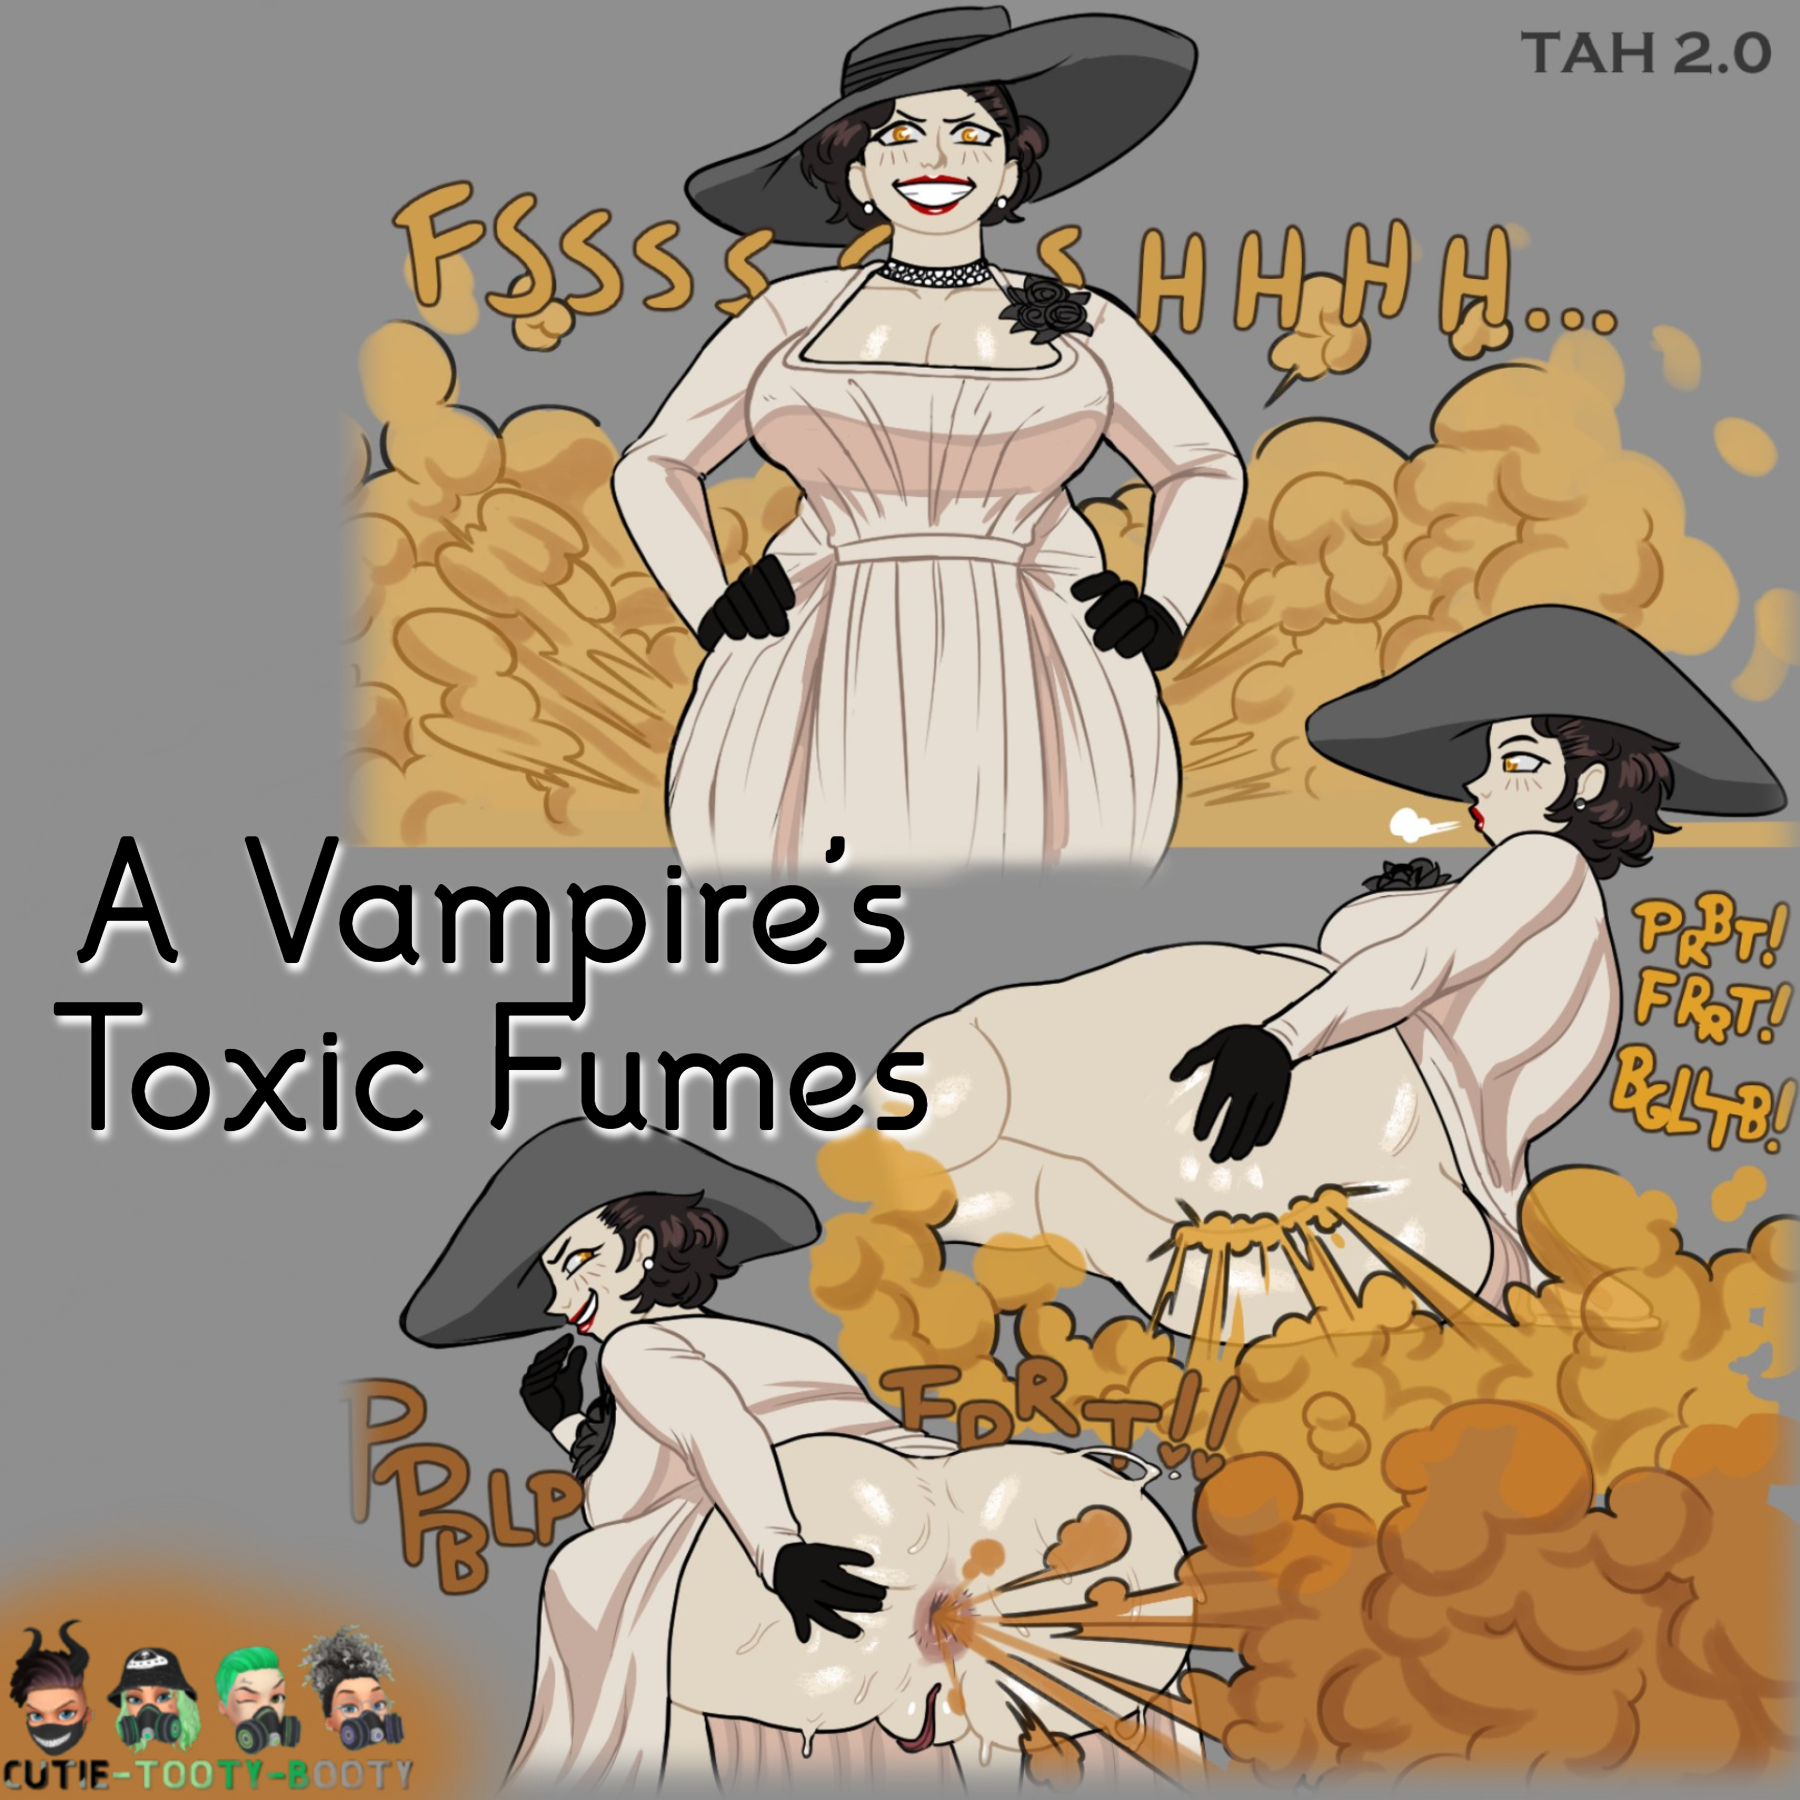 A Vampire's Toxic Fumes